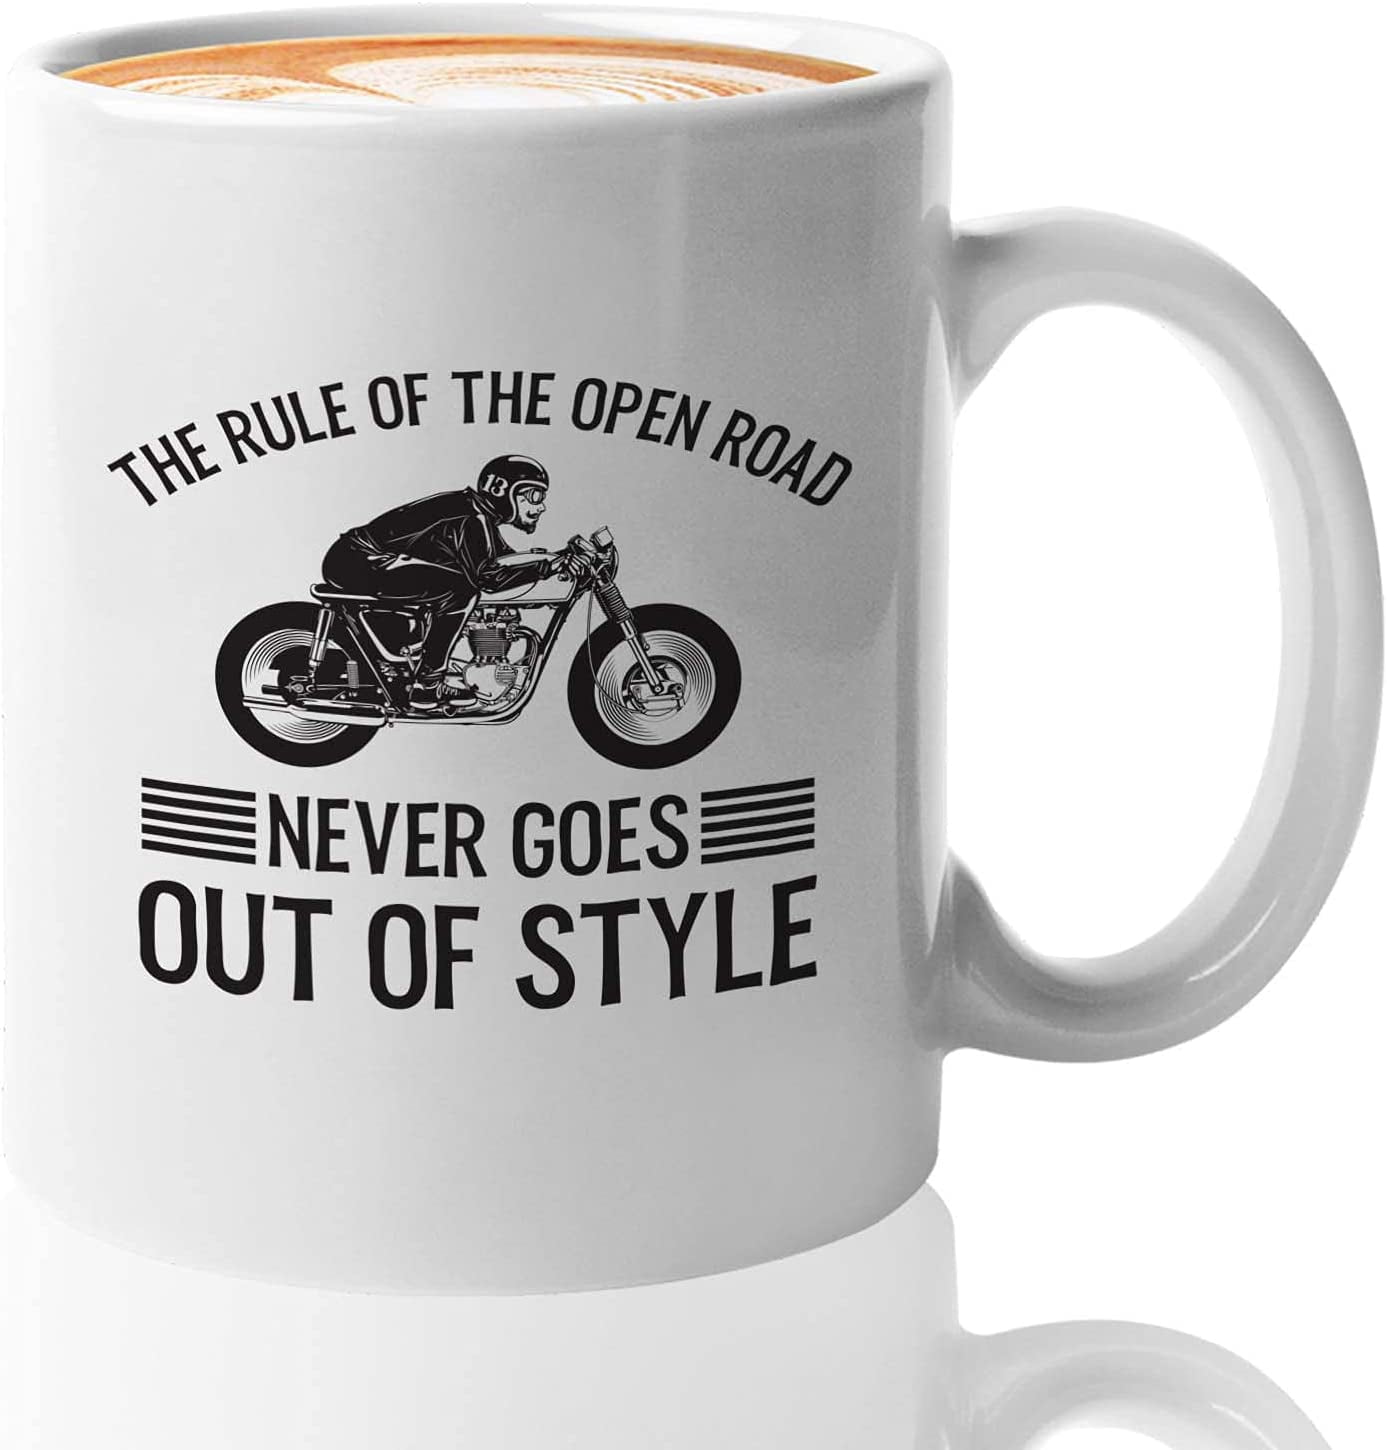 Moto Mug – Moto Coffee